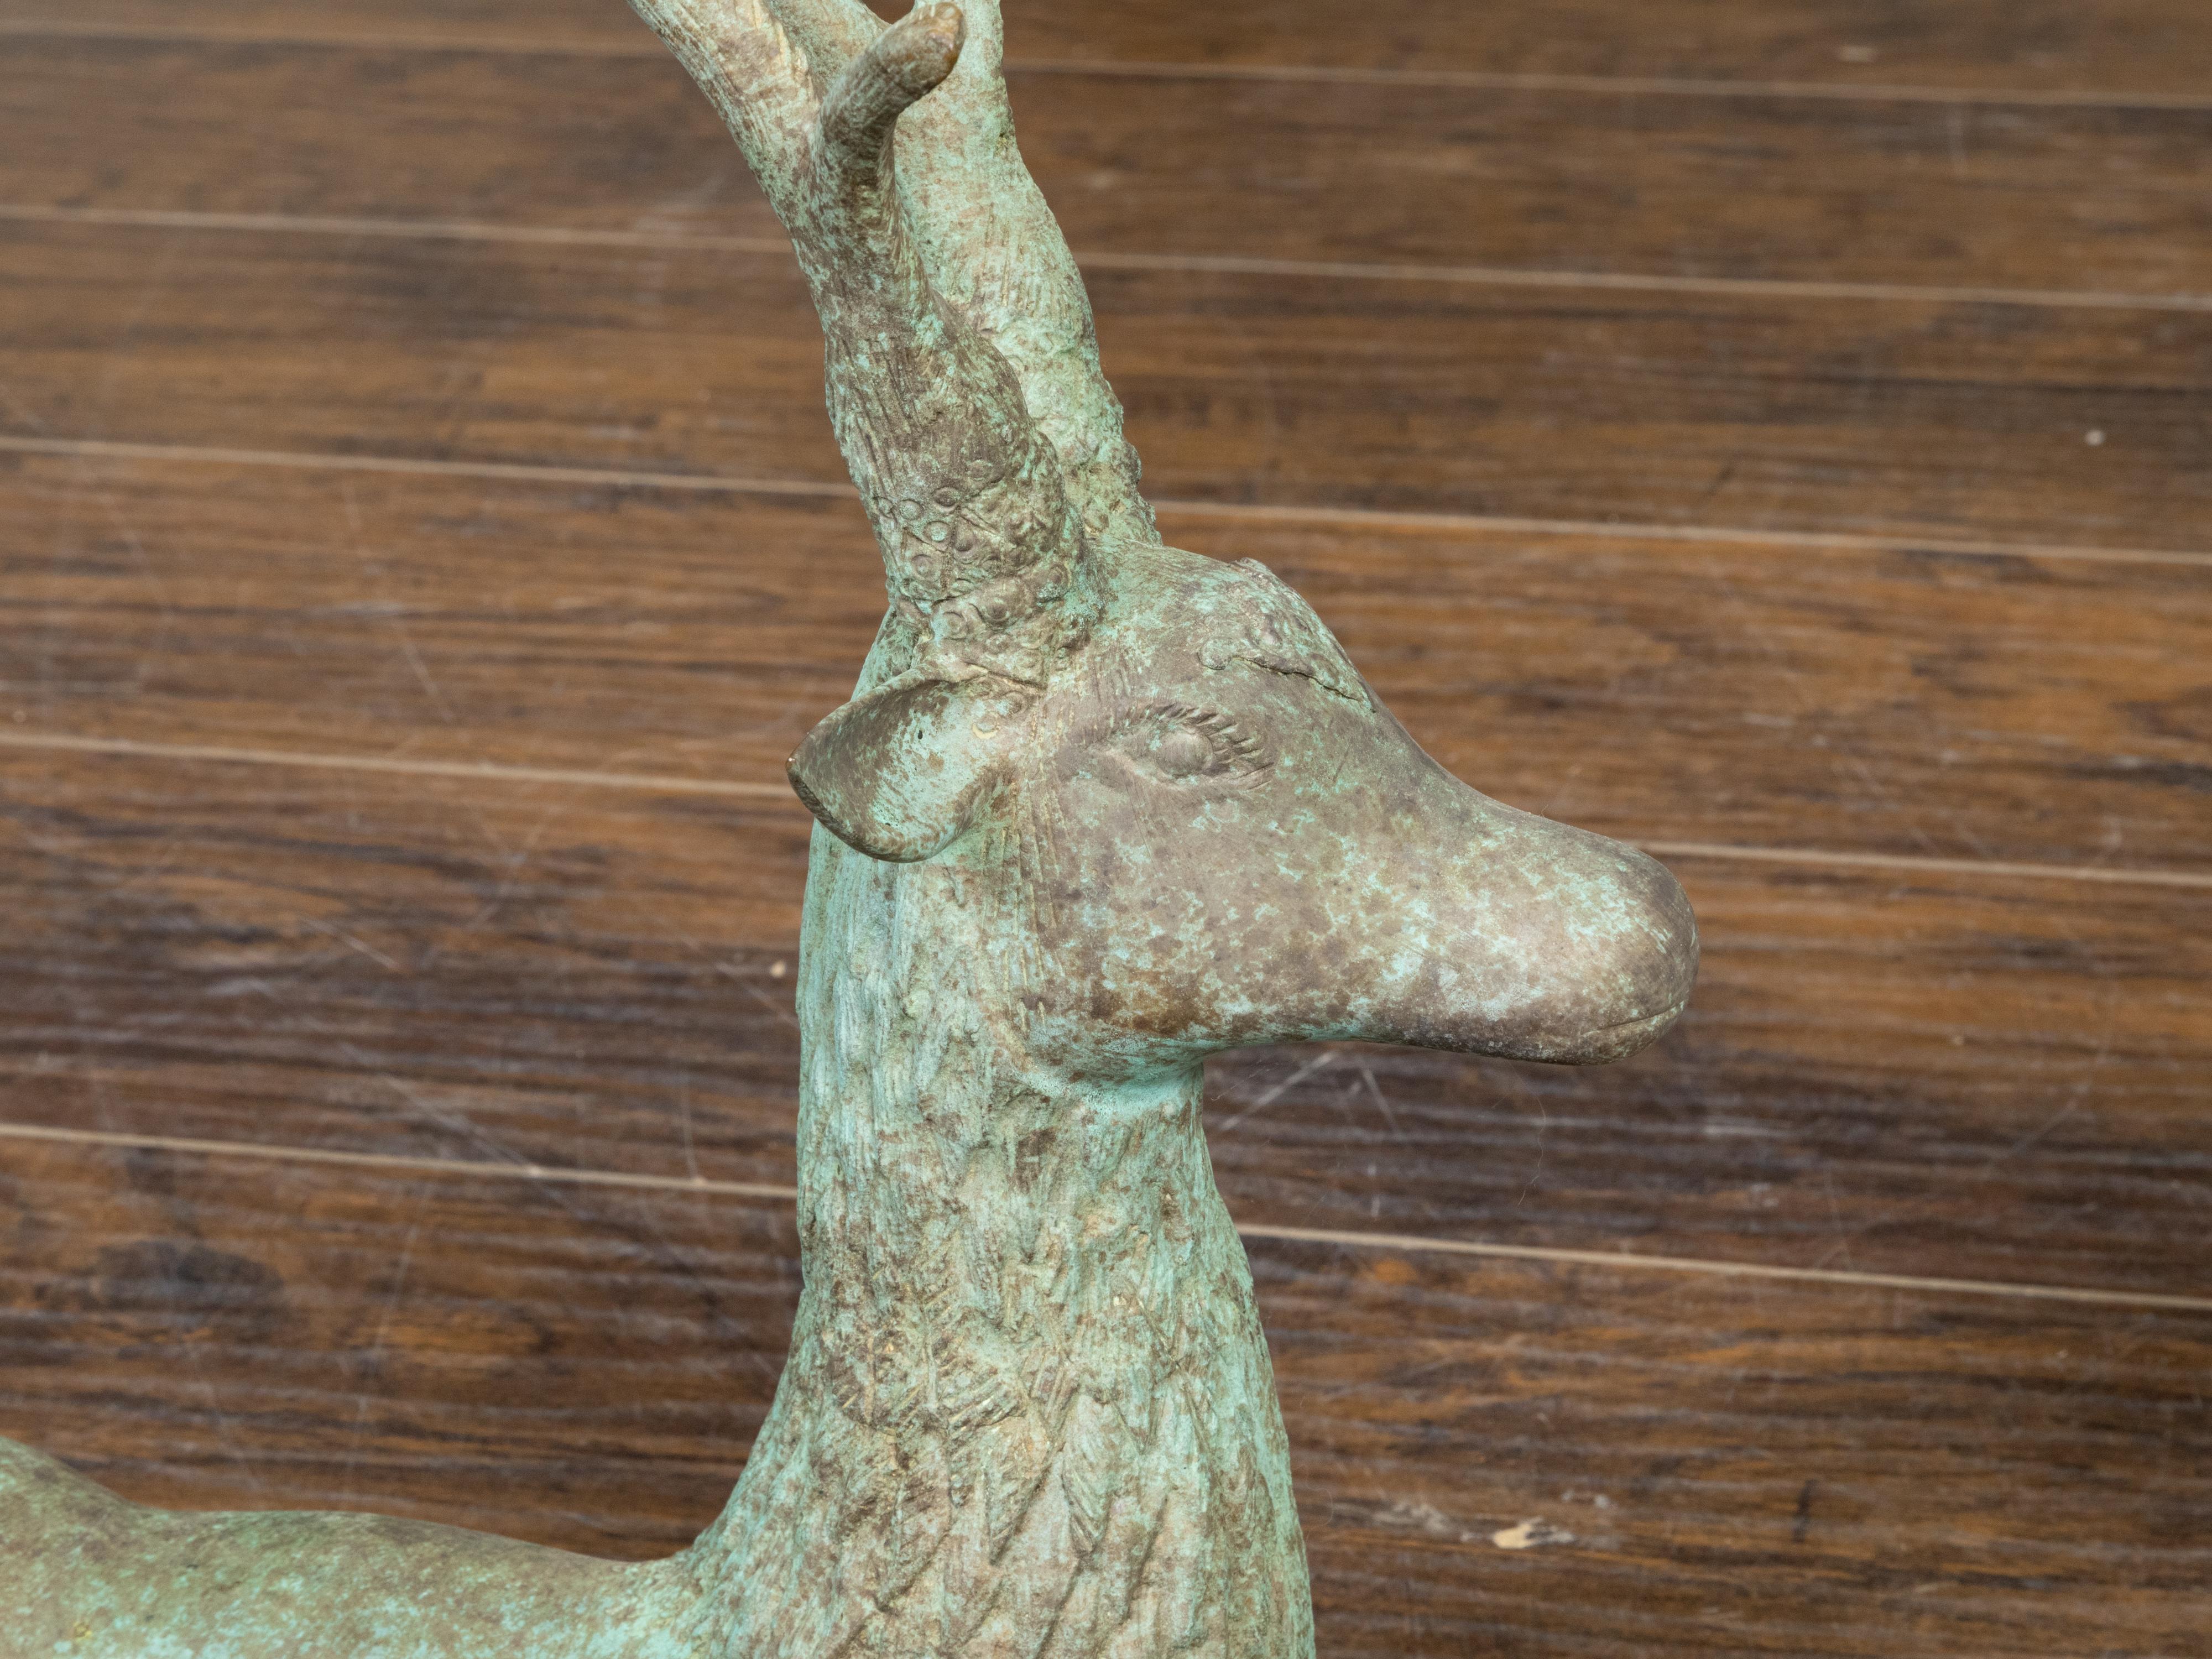 Pair of Vintage Indian Bronze Deer Garden Sculptures with Verdigris Patina For Sale 3